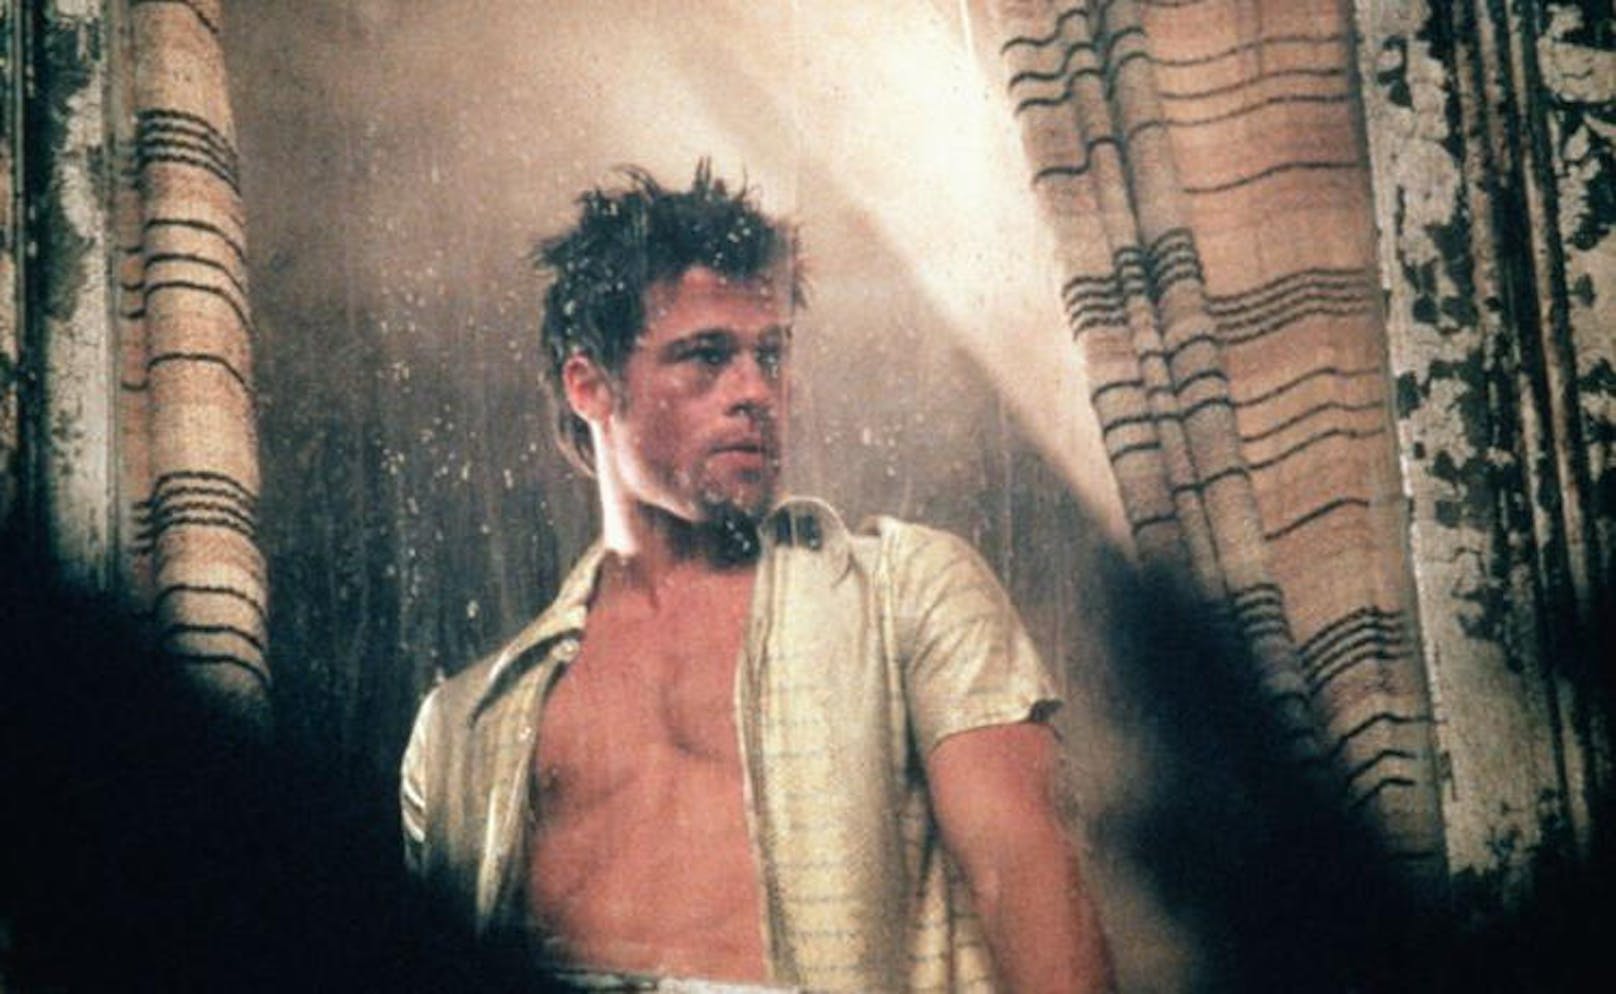 Brad Pitt in "Fight Club".